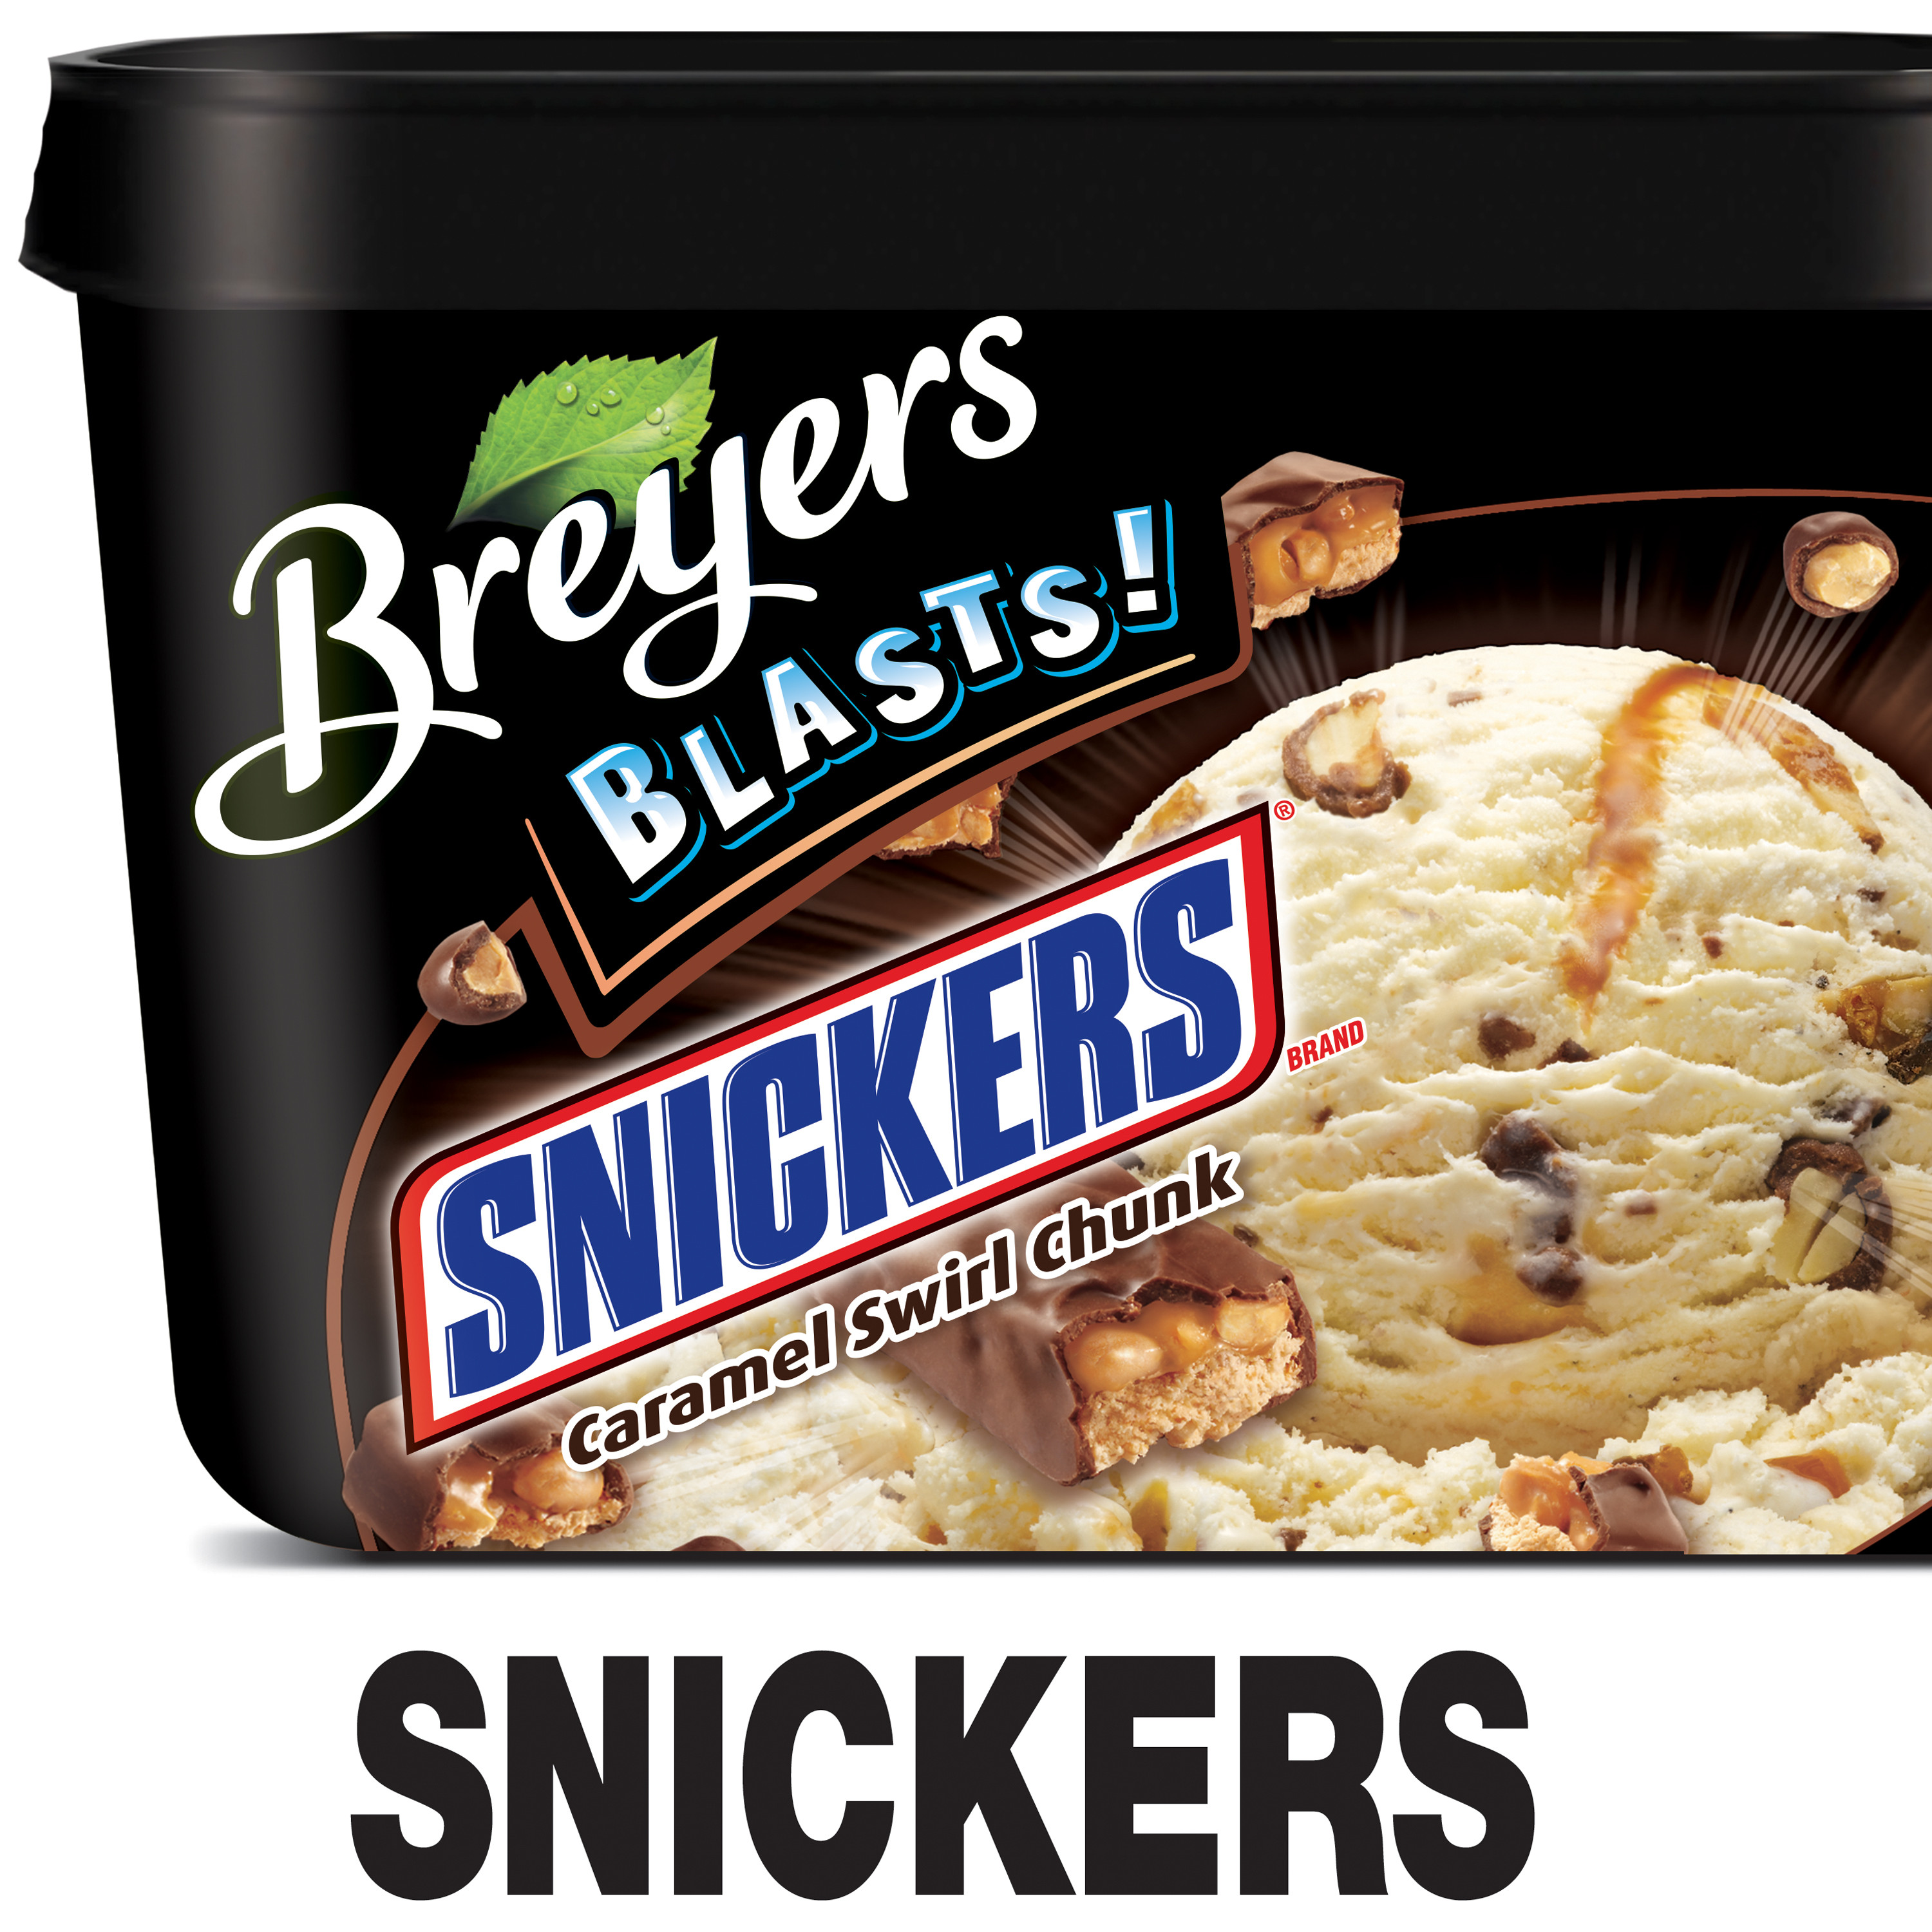 Breyers Frozen Dairy Dessert
 Breyers Blasts Snickers Caramel Swirl Chunk Frozen Dairy